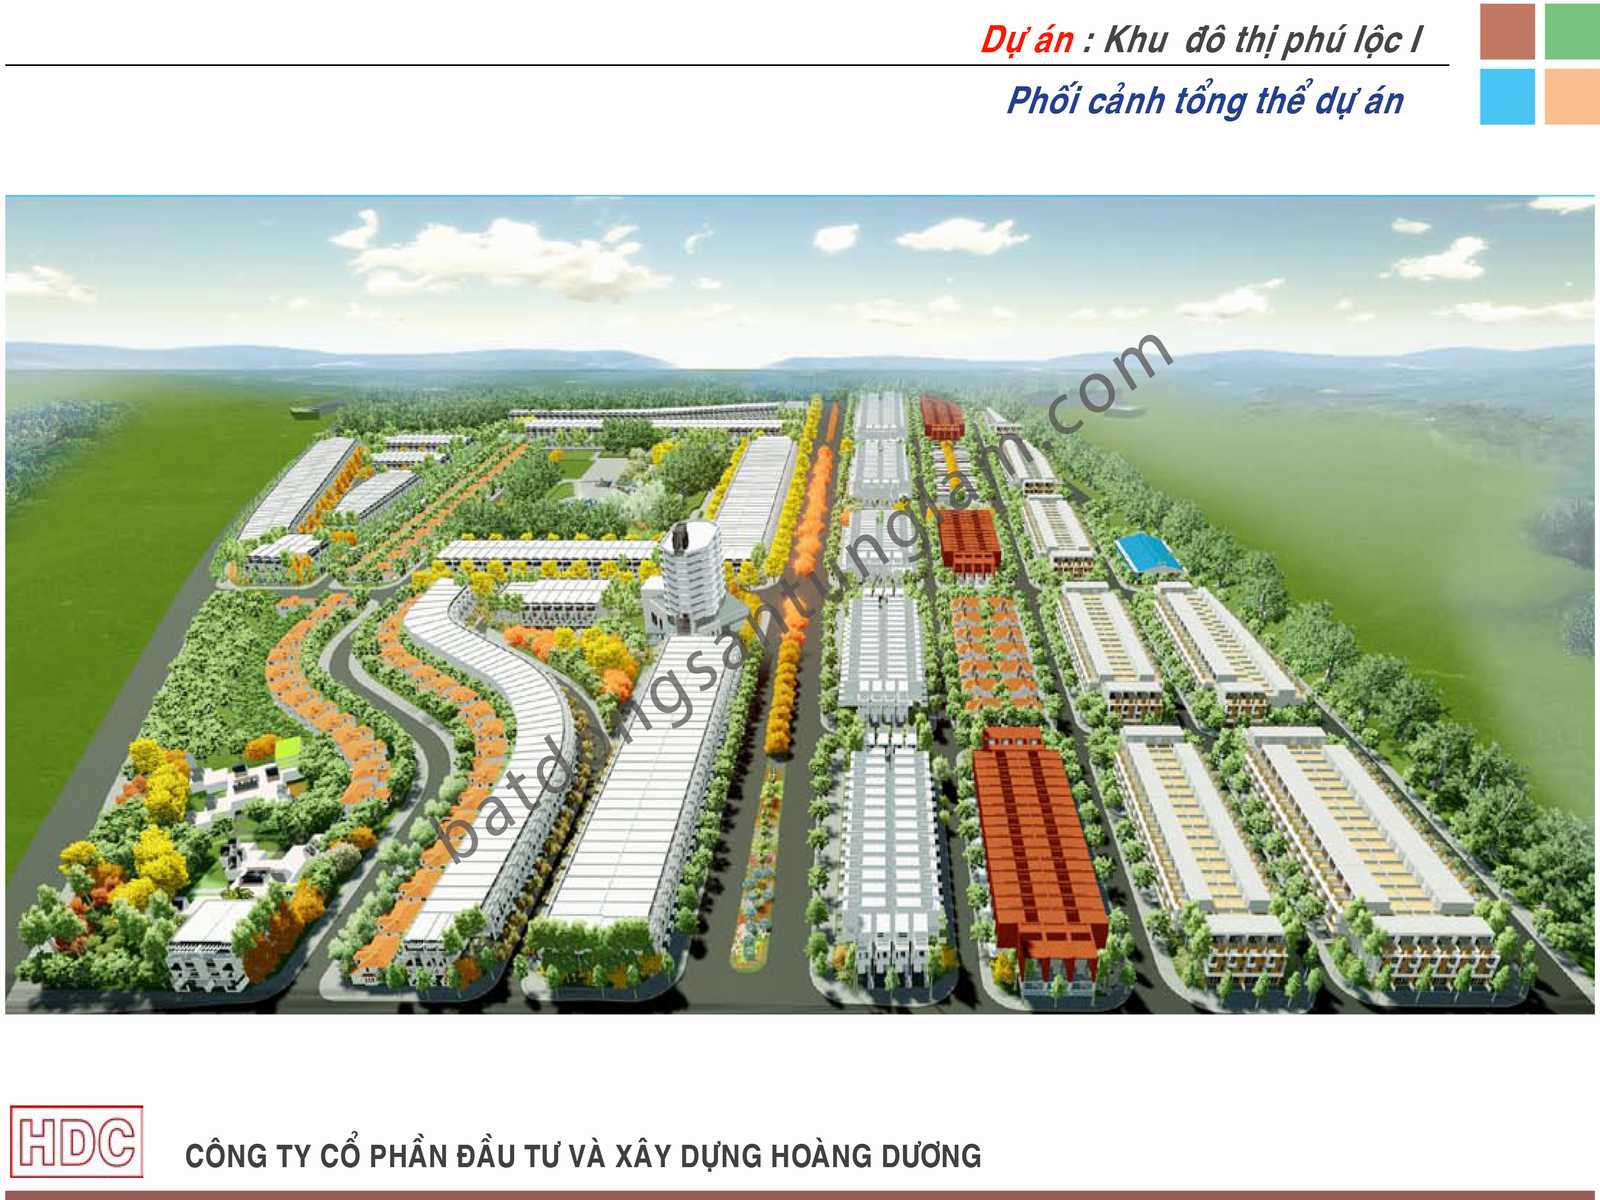 Phối cảnh tổng quan dự án khu đô thị Phú Lộc 1